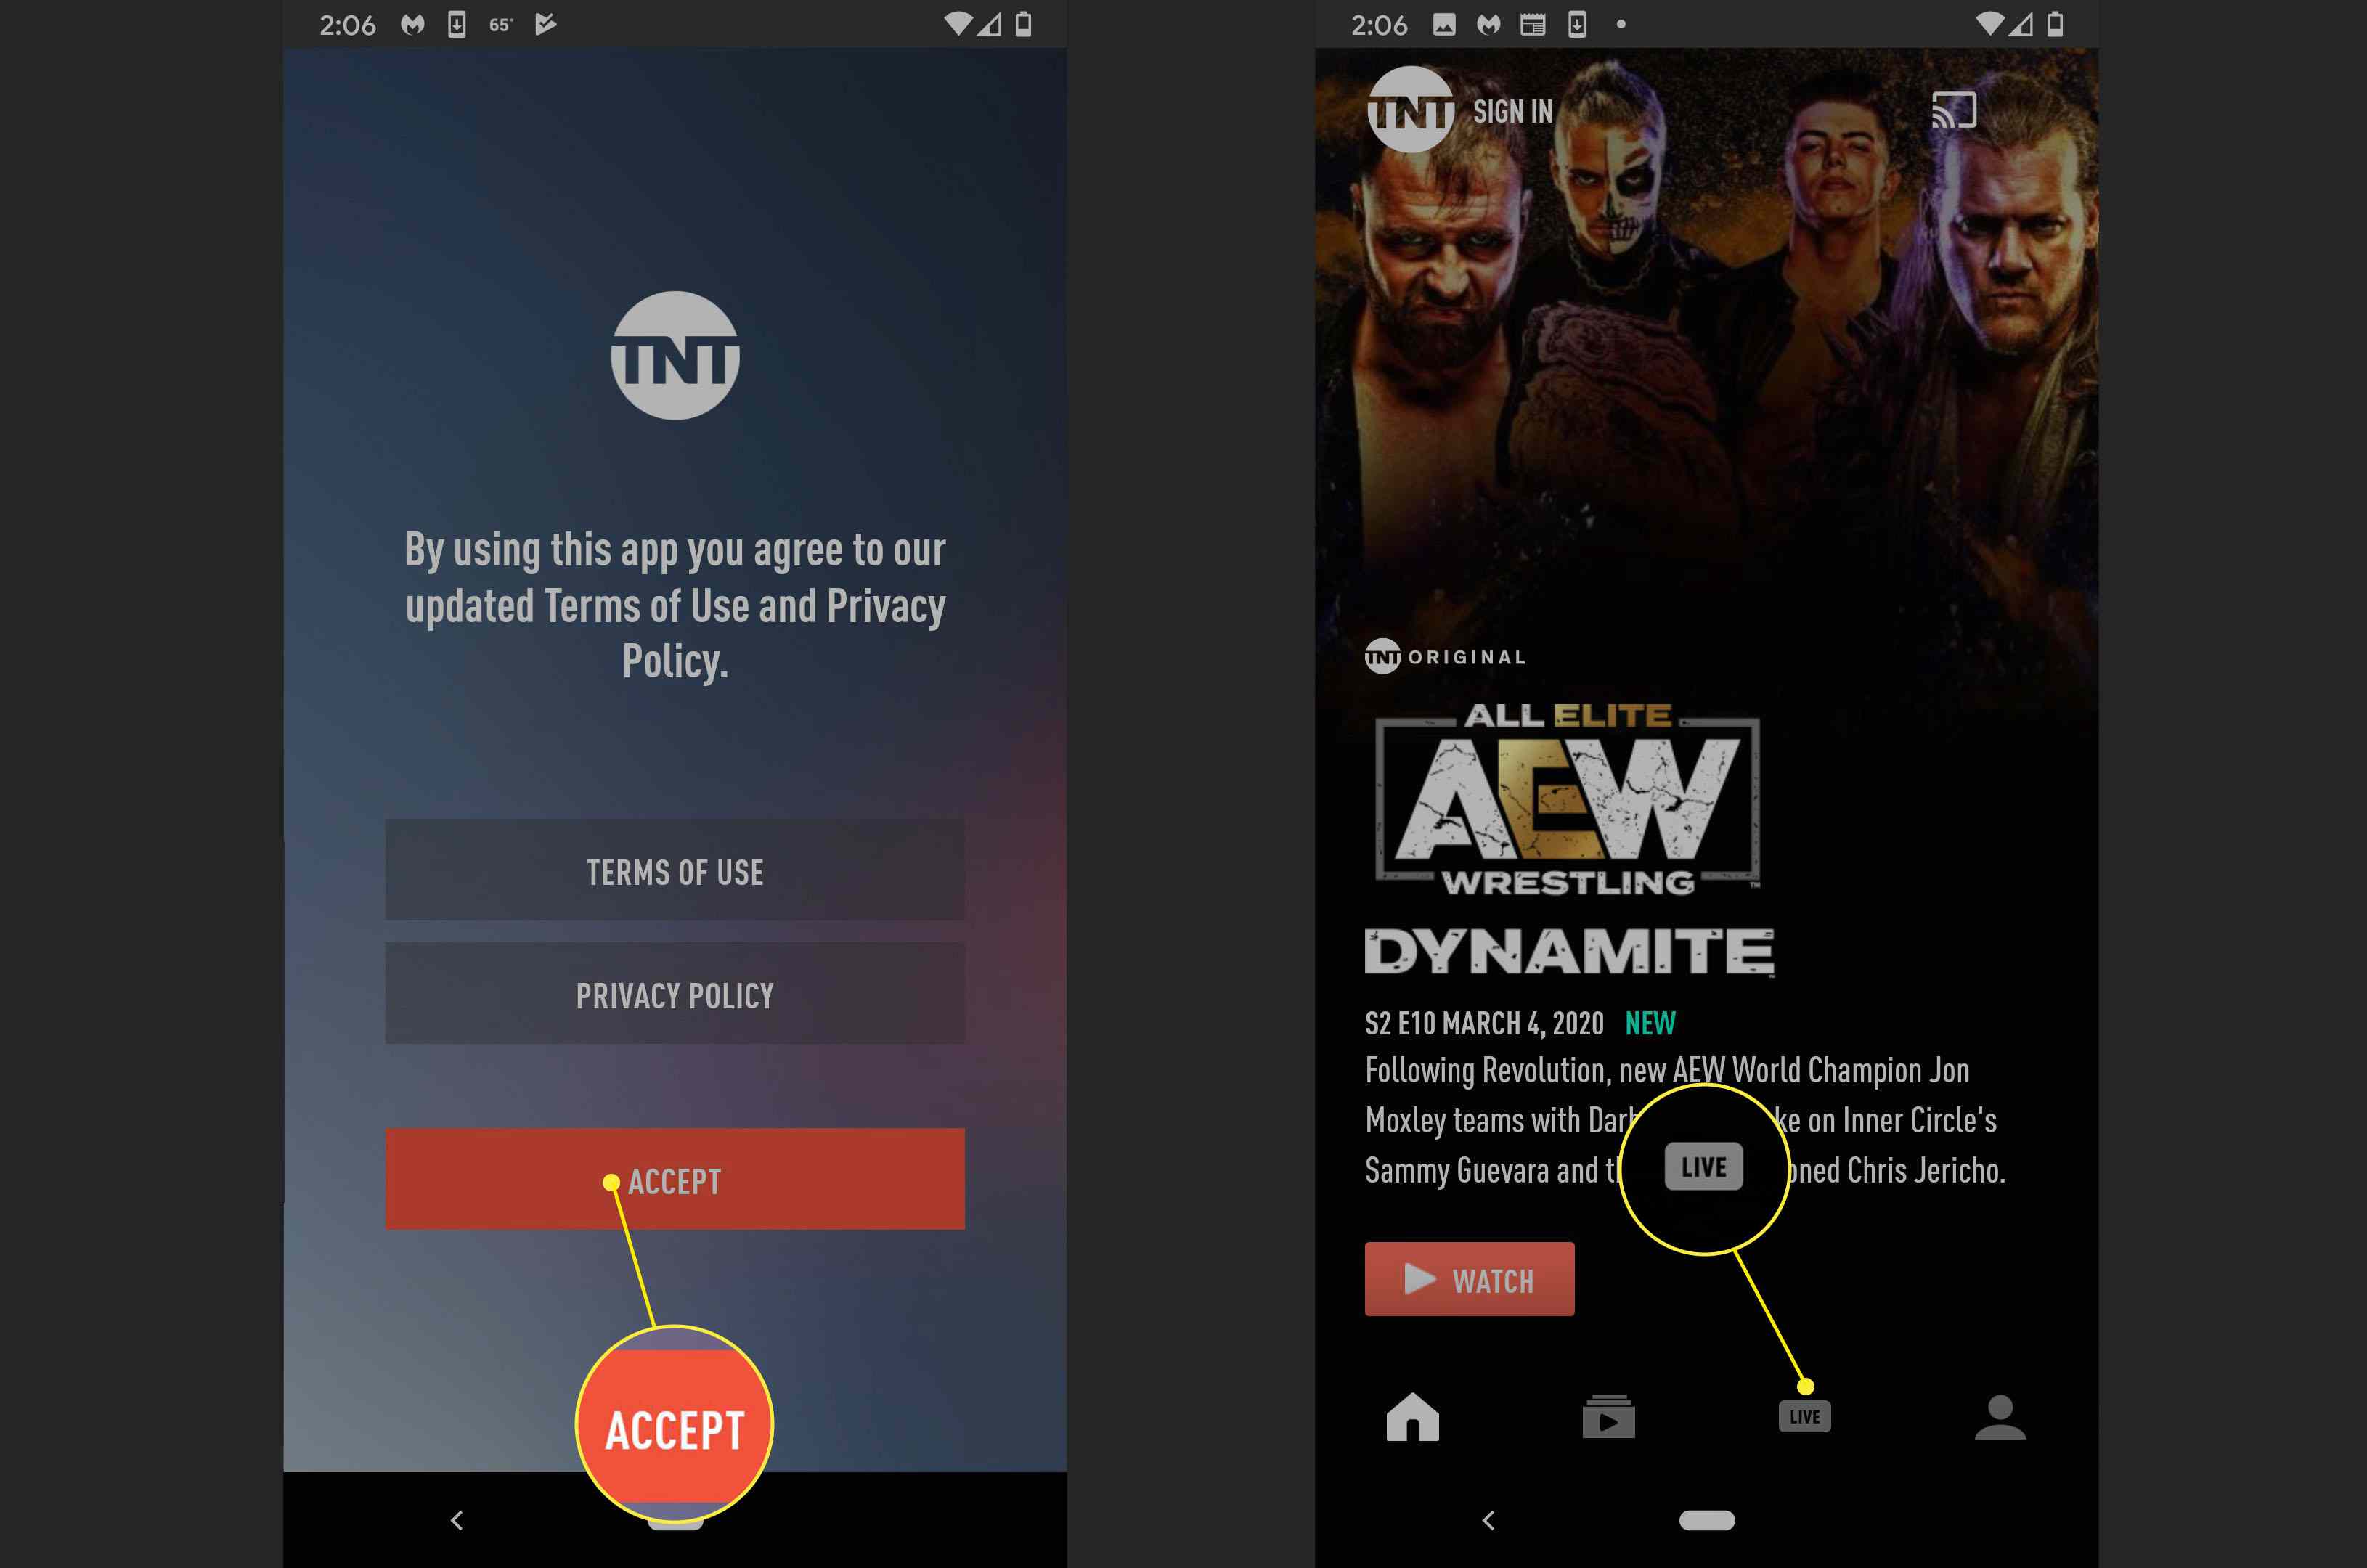 Umístění možnosti LIVE v aplikaci pro streamování TNT.